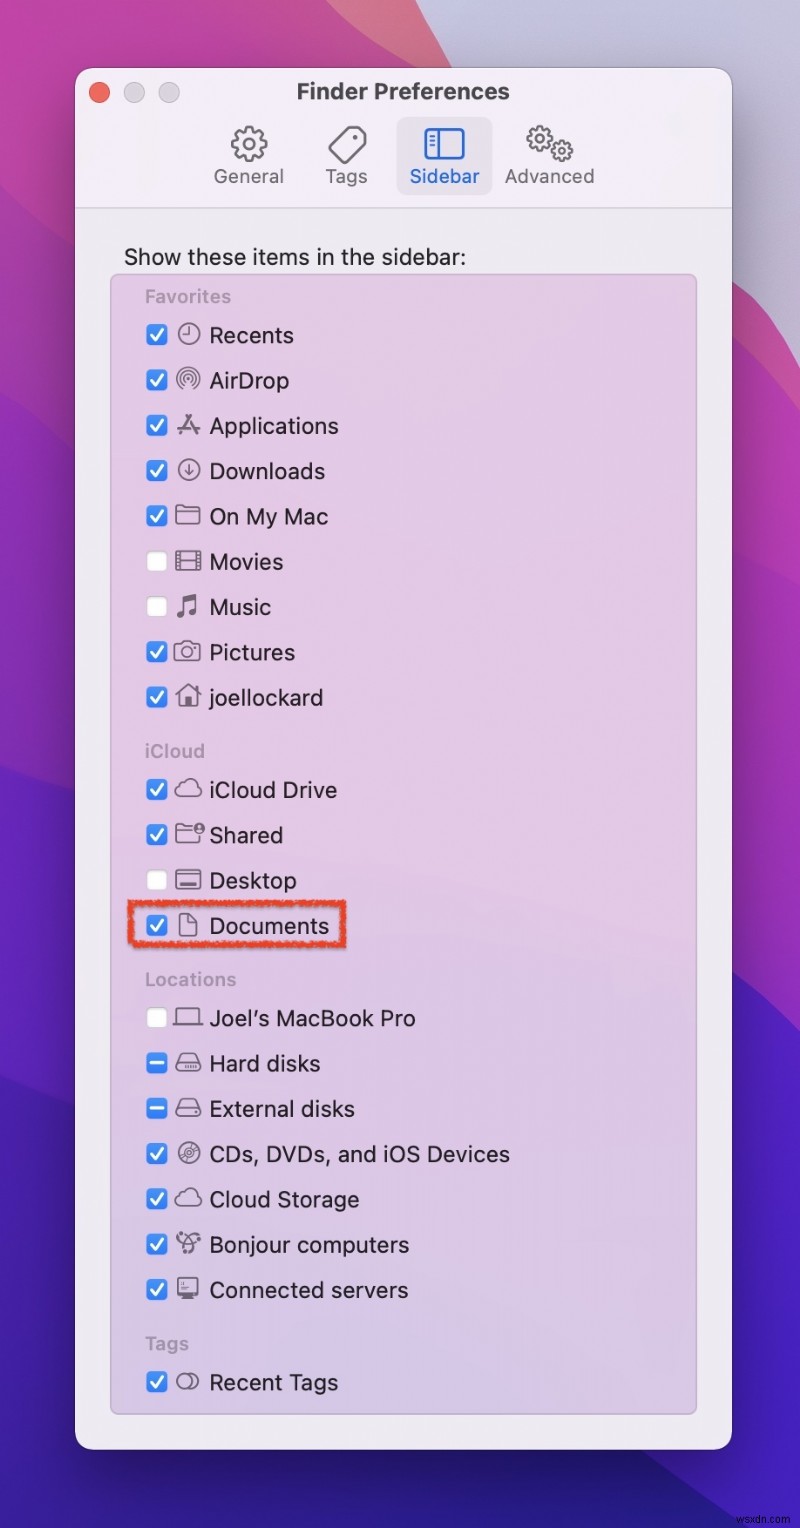 Documents フォルダが Mac から消えた:どうすればいいですか? 